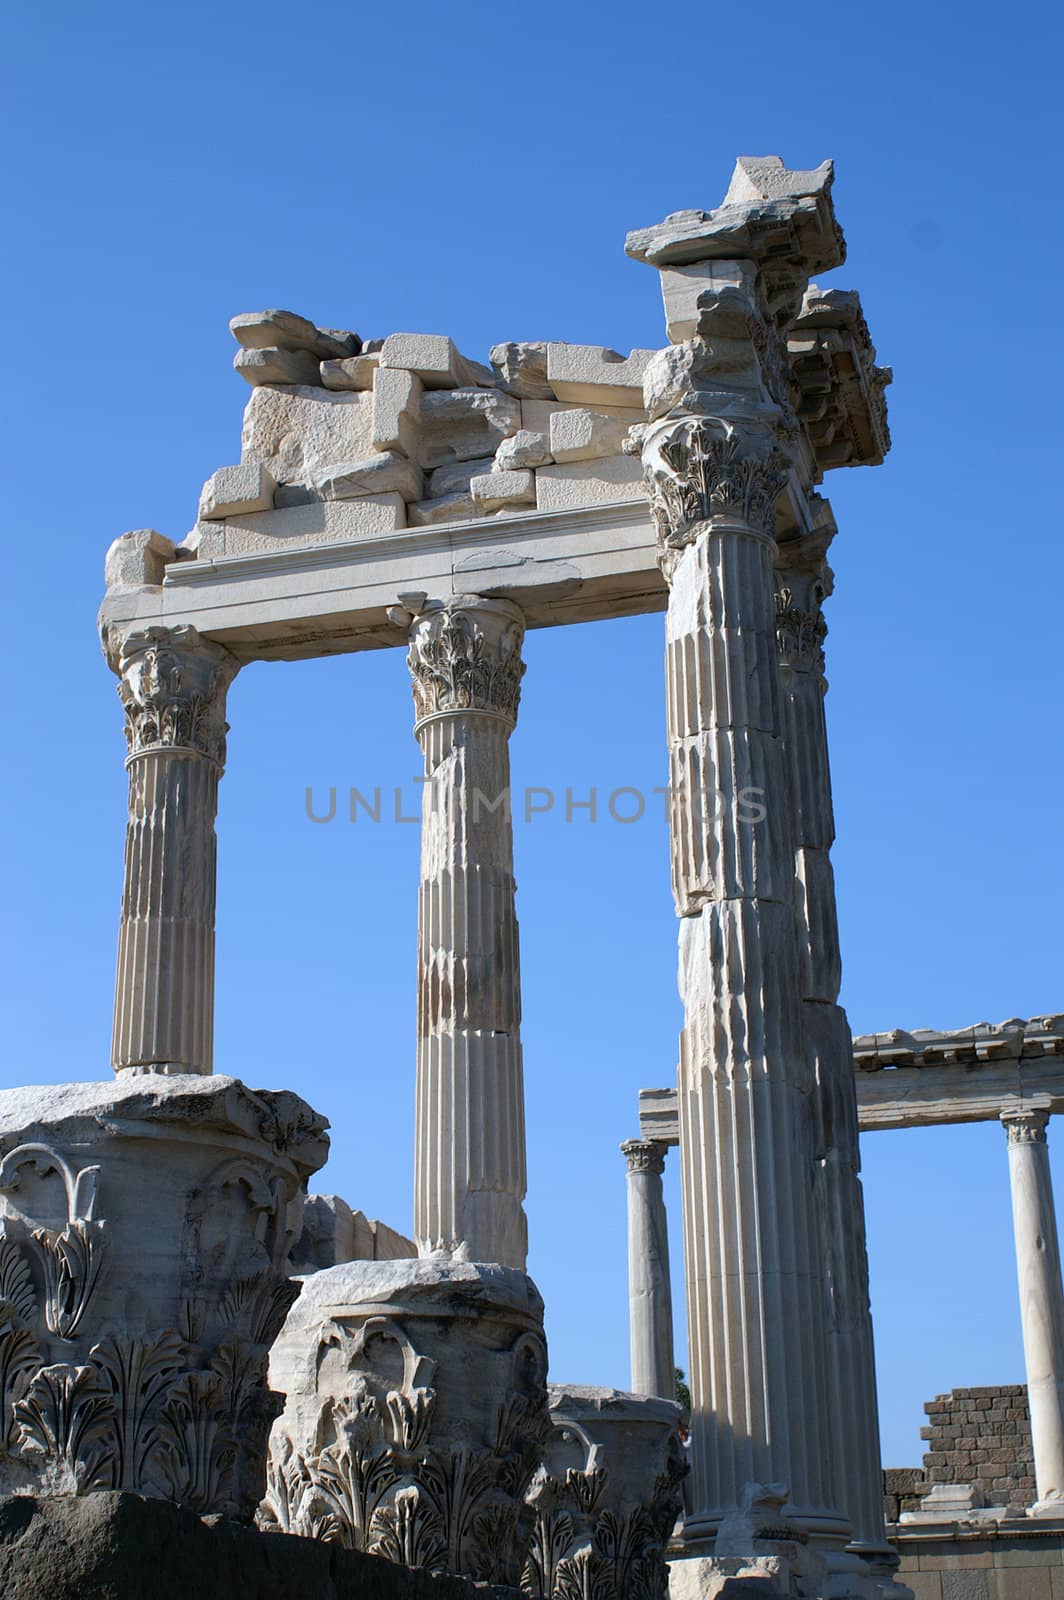 pergamon column2 by Arkadiusz